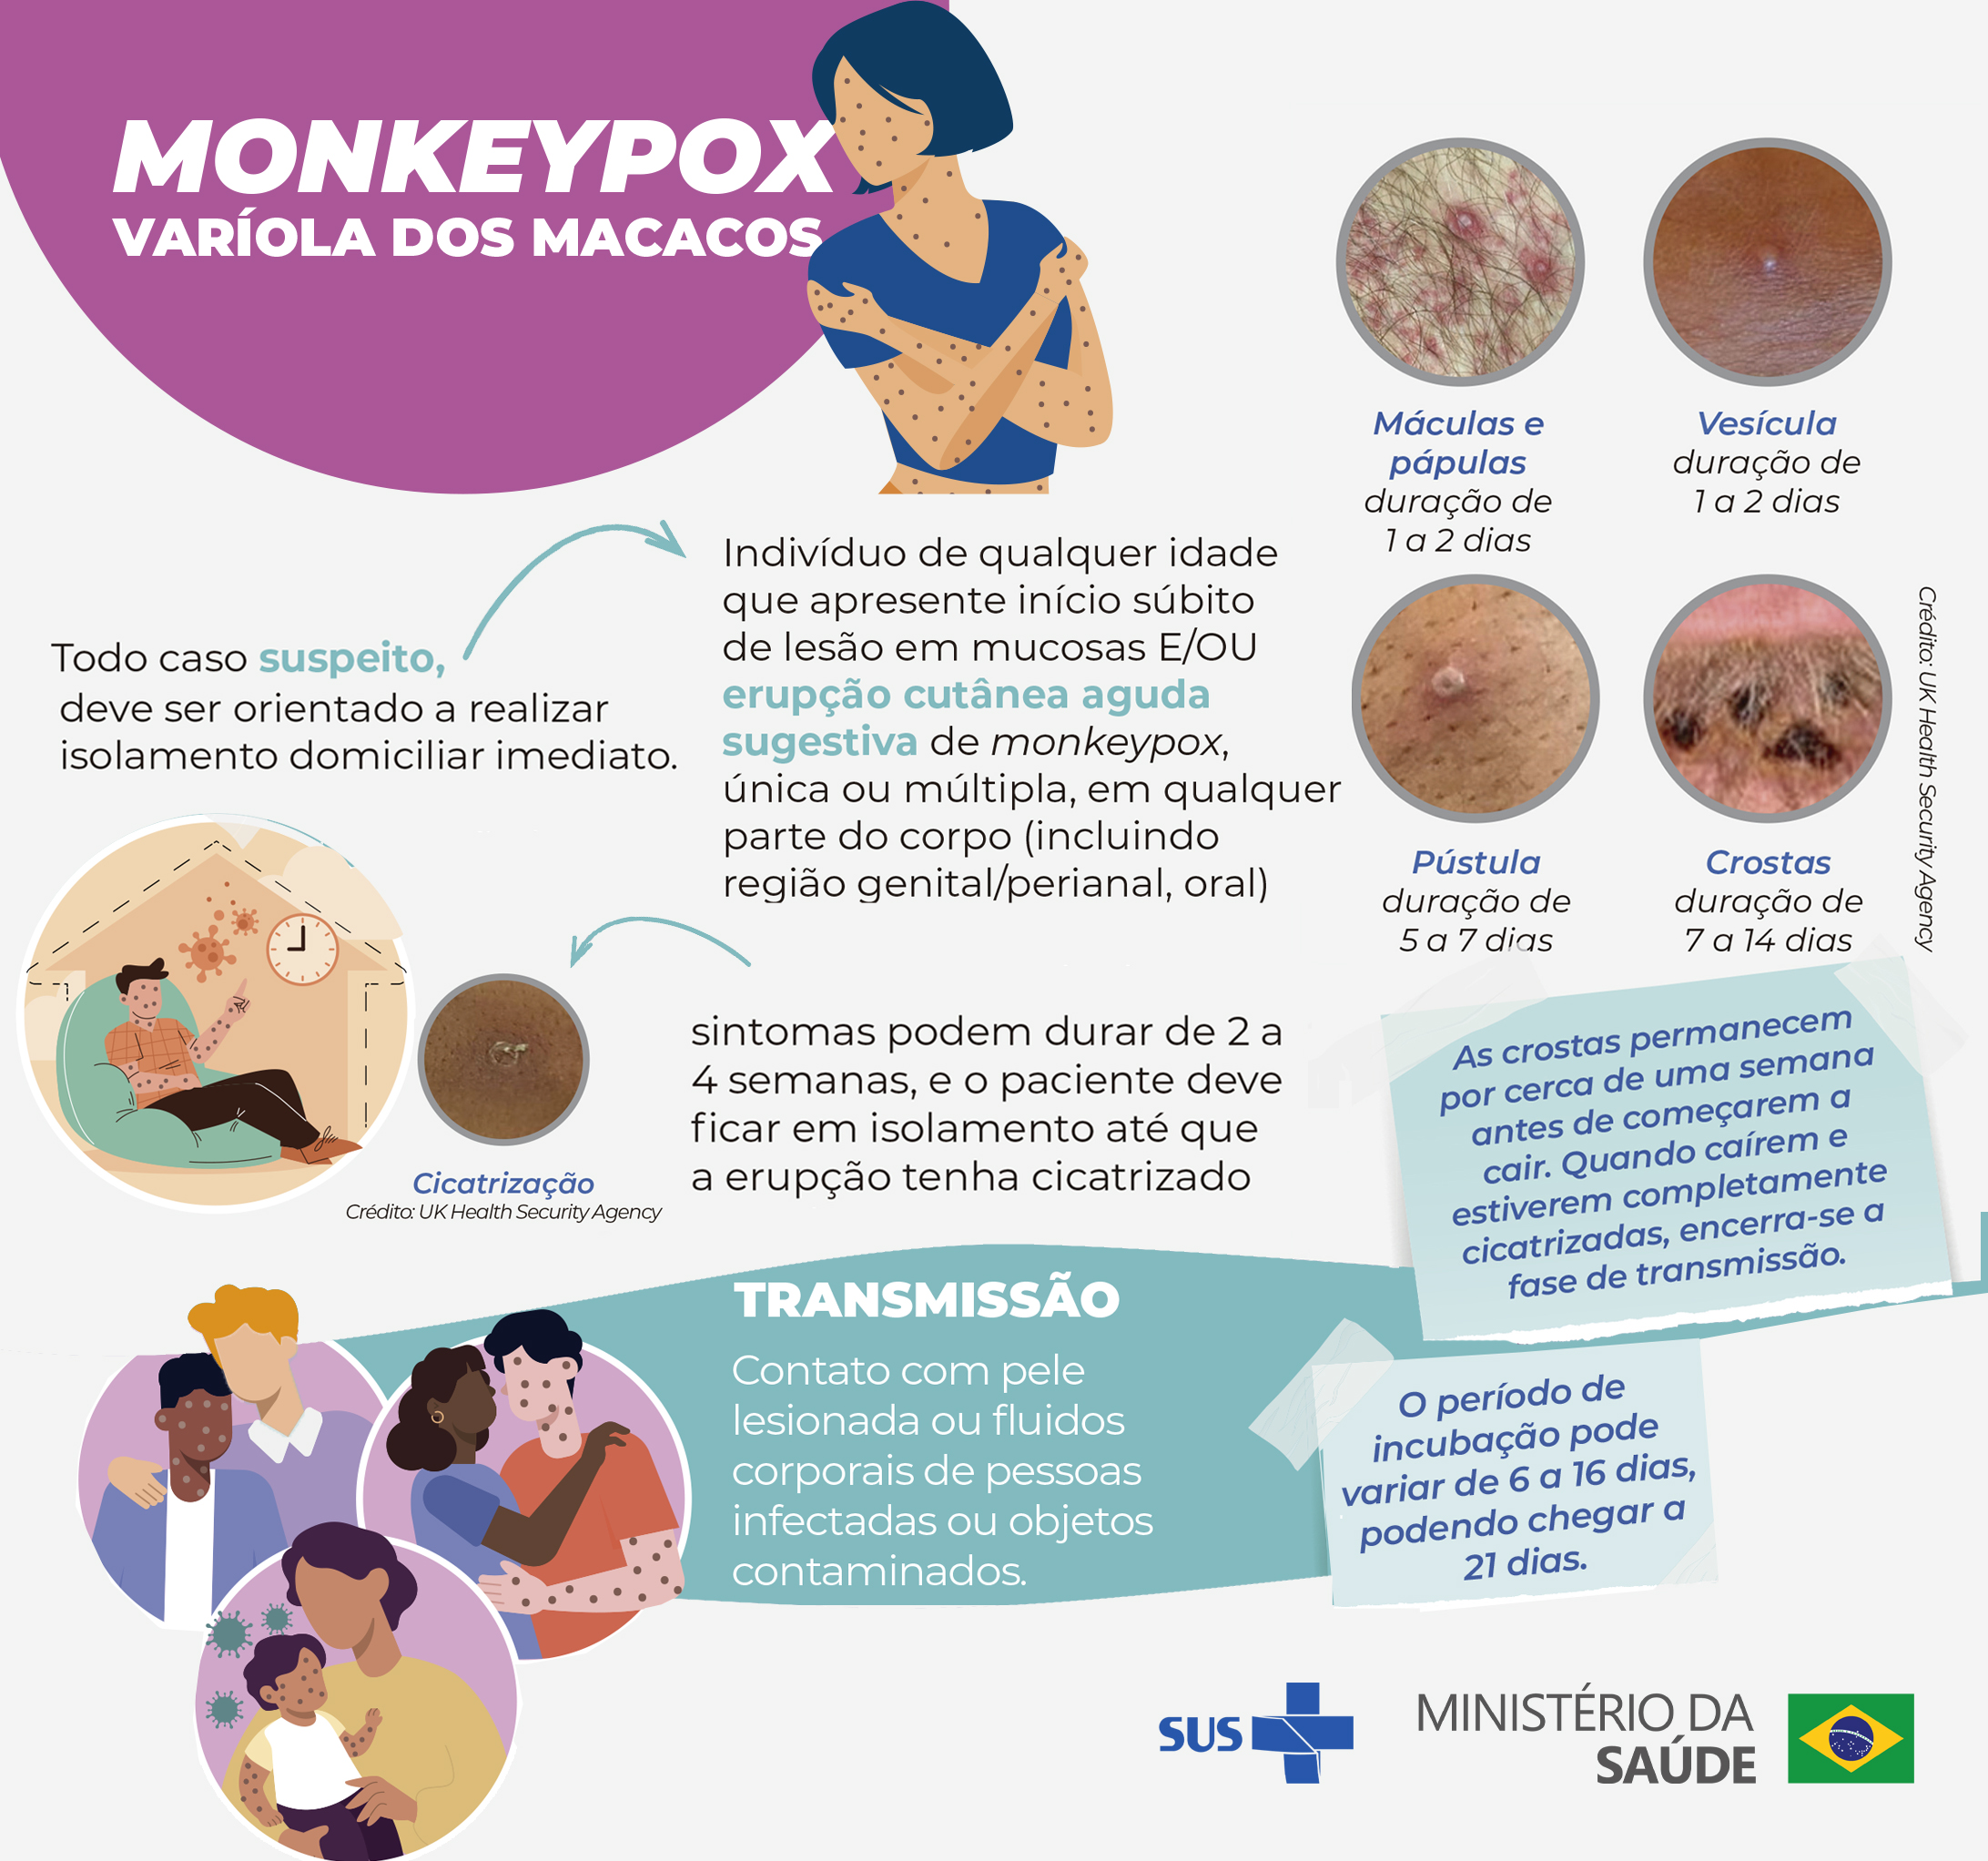 Pacientes suspeitos de monkeypox devem procurar UBS ou USF